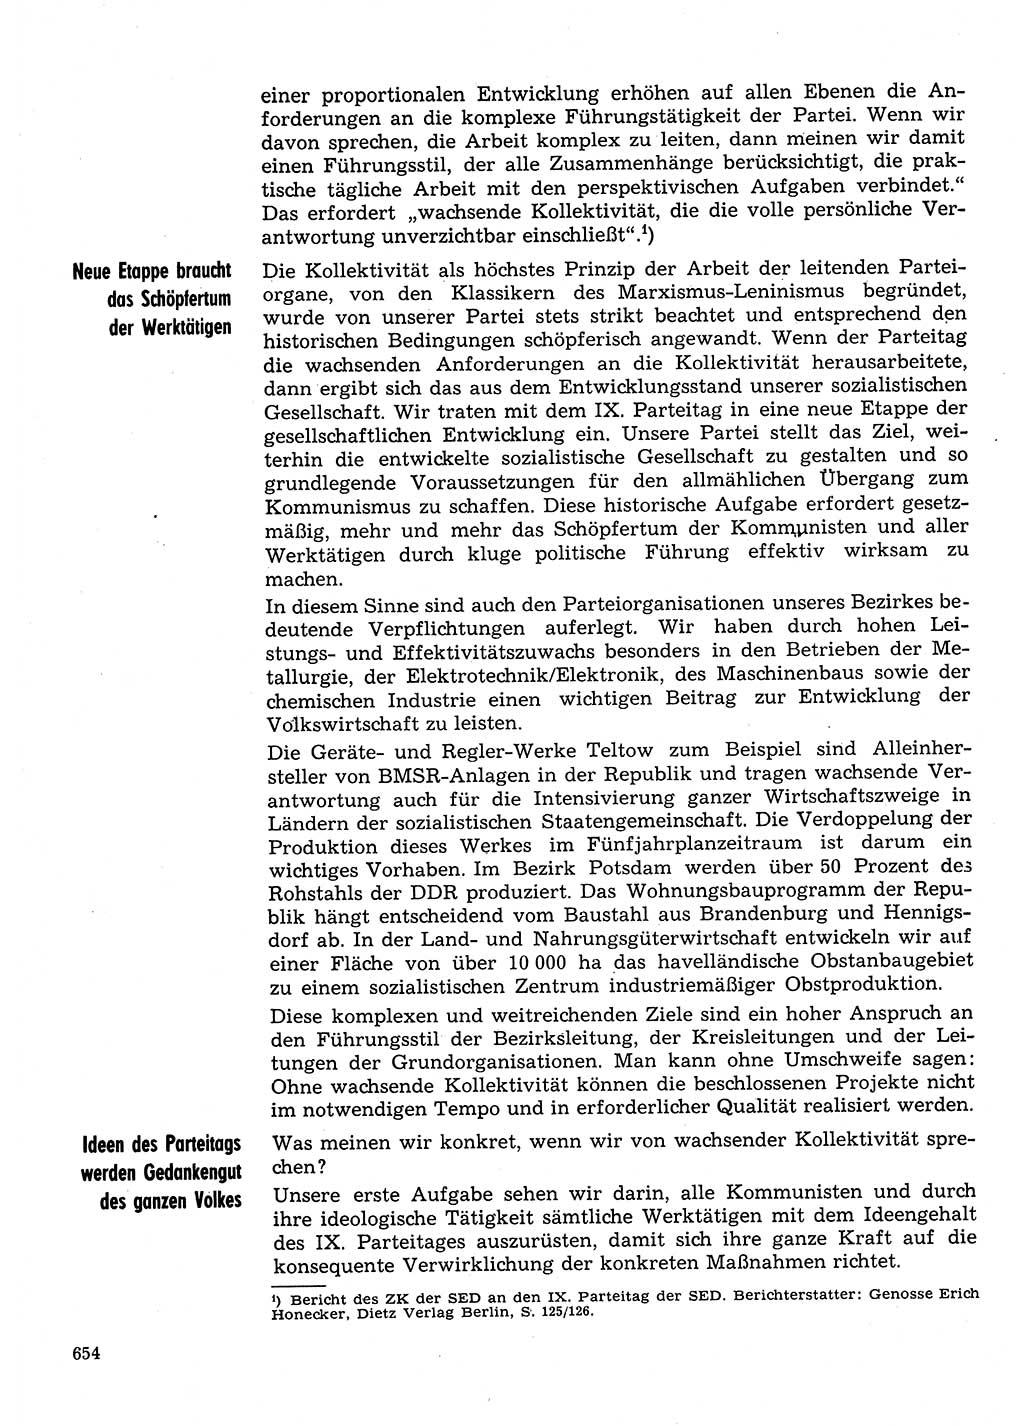 Neuer Weg (NW), Organ des Zentralkomitees (ZK) der SED (Sozialistische Einheitspartei Deutschlands) für Fragen des Parteilebens, 31. Jahrgang [Deutsche Demokratische Republik (DDR)] 1976, Seite 654 (NW ZK SED DDR 1976, S. 654)